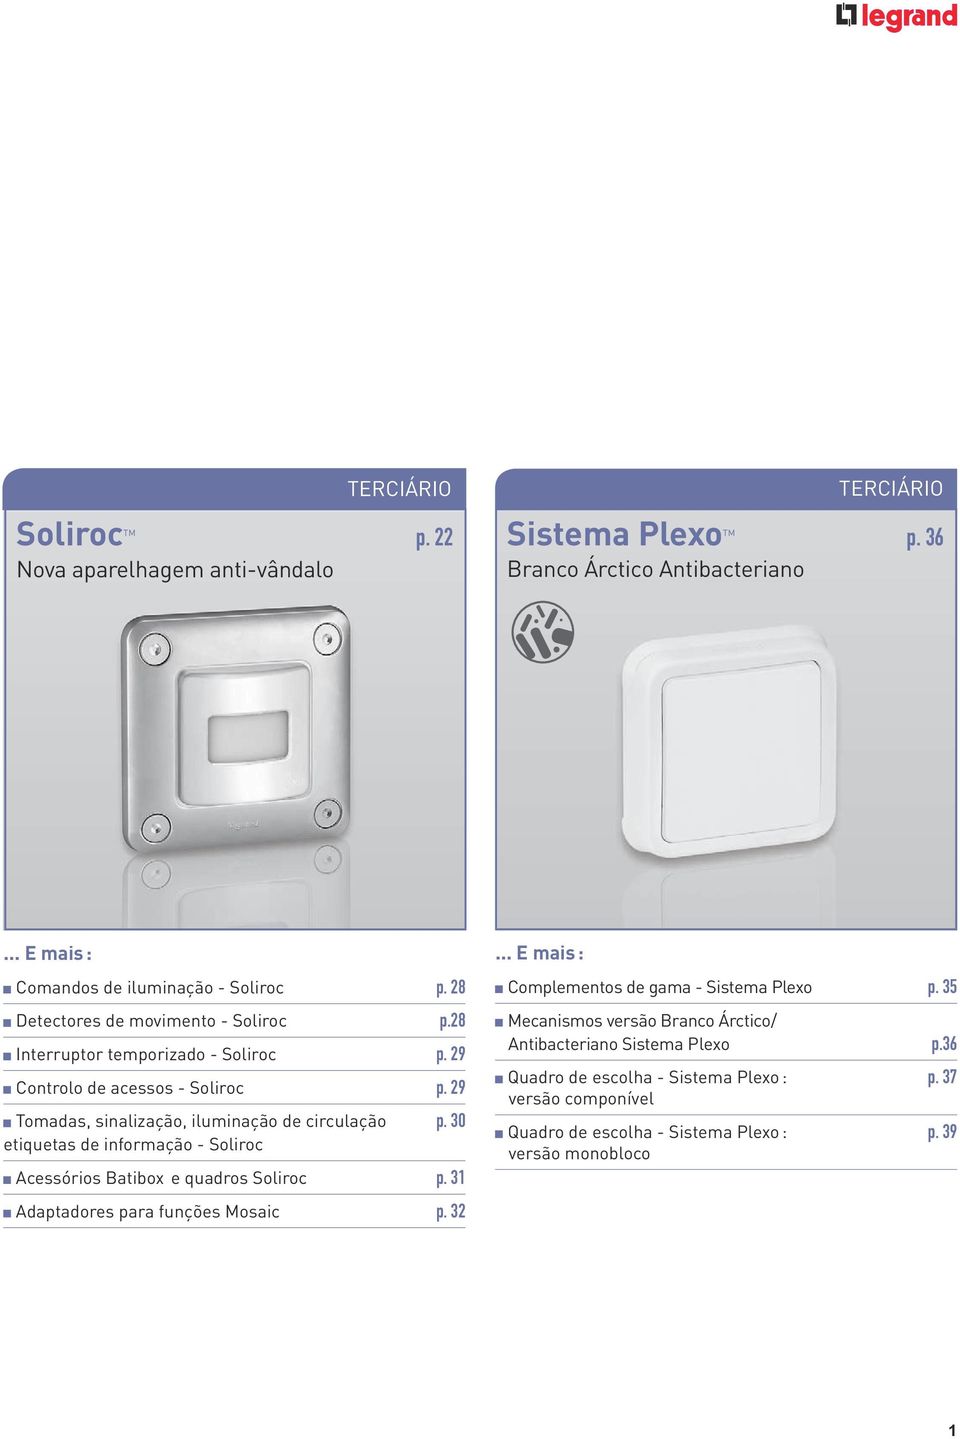 30 etiquetas de informação - Soliroc Acessórios Batibox e quadros Soliroc p. 3 Adaptadores para funções Mosaic p. 3... E mais : Complementos de gama - Sistema Plexo p.